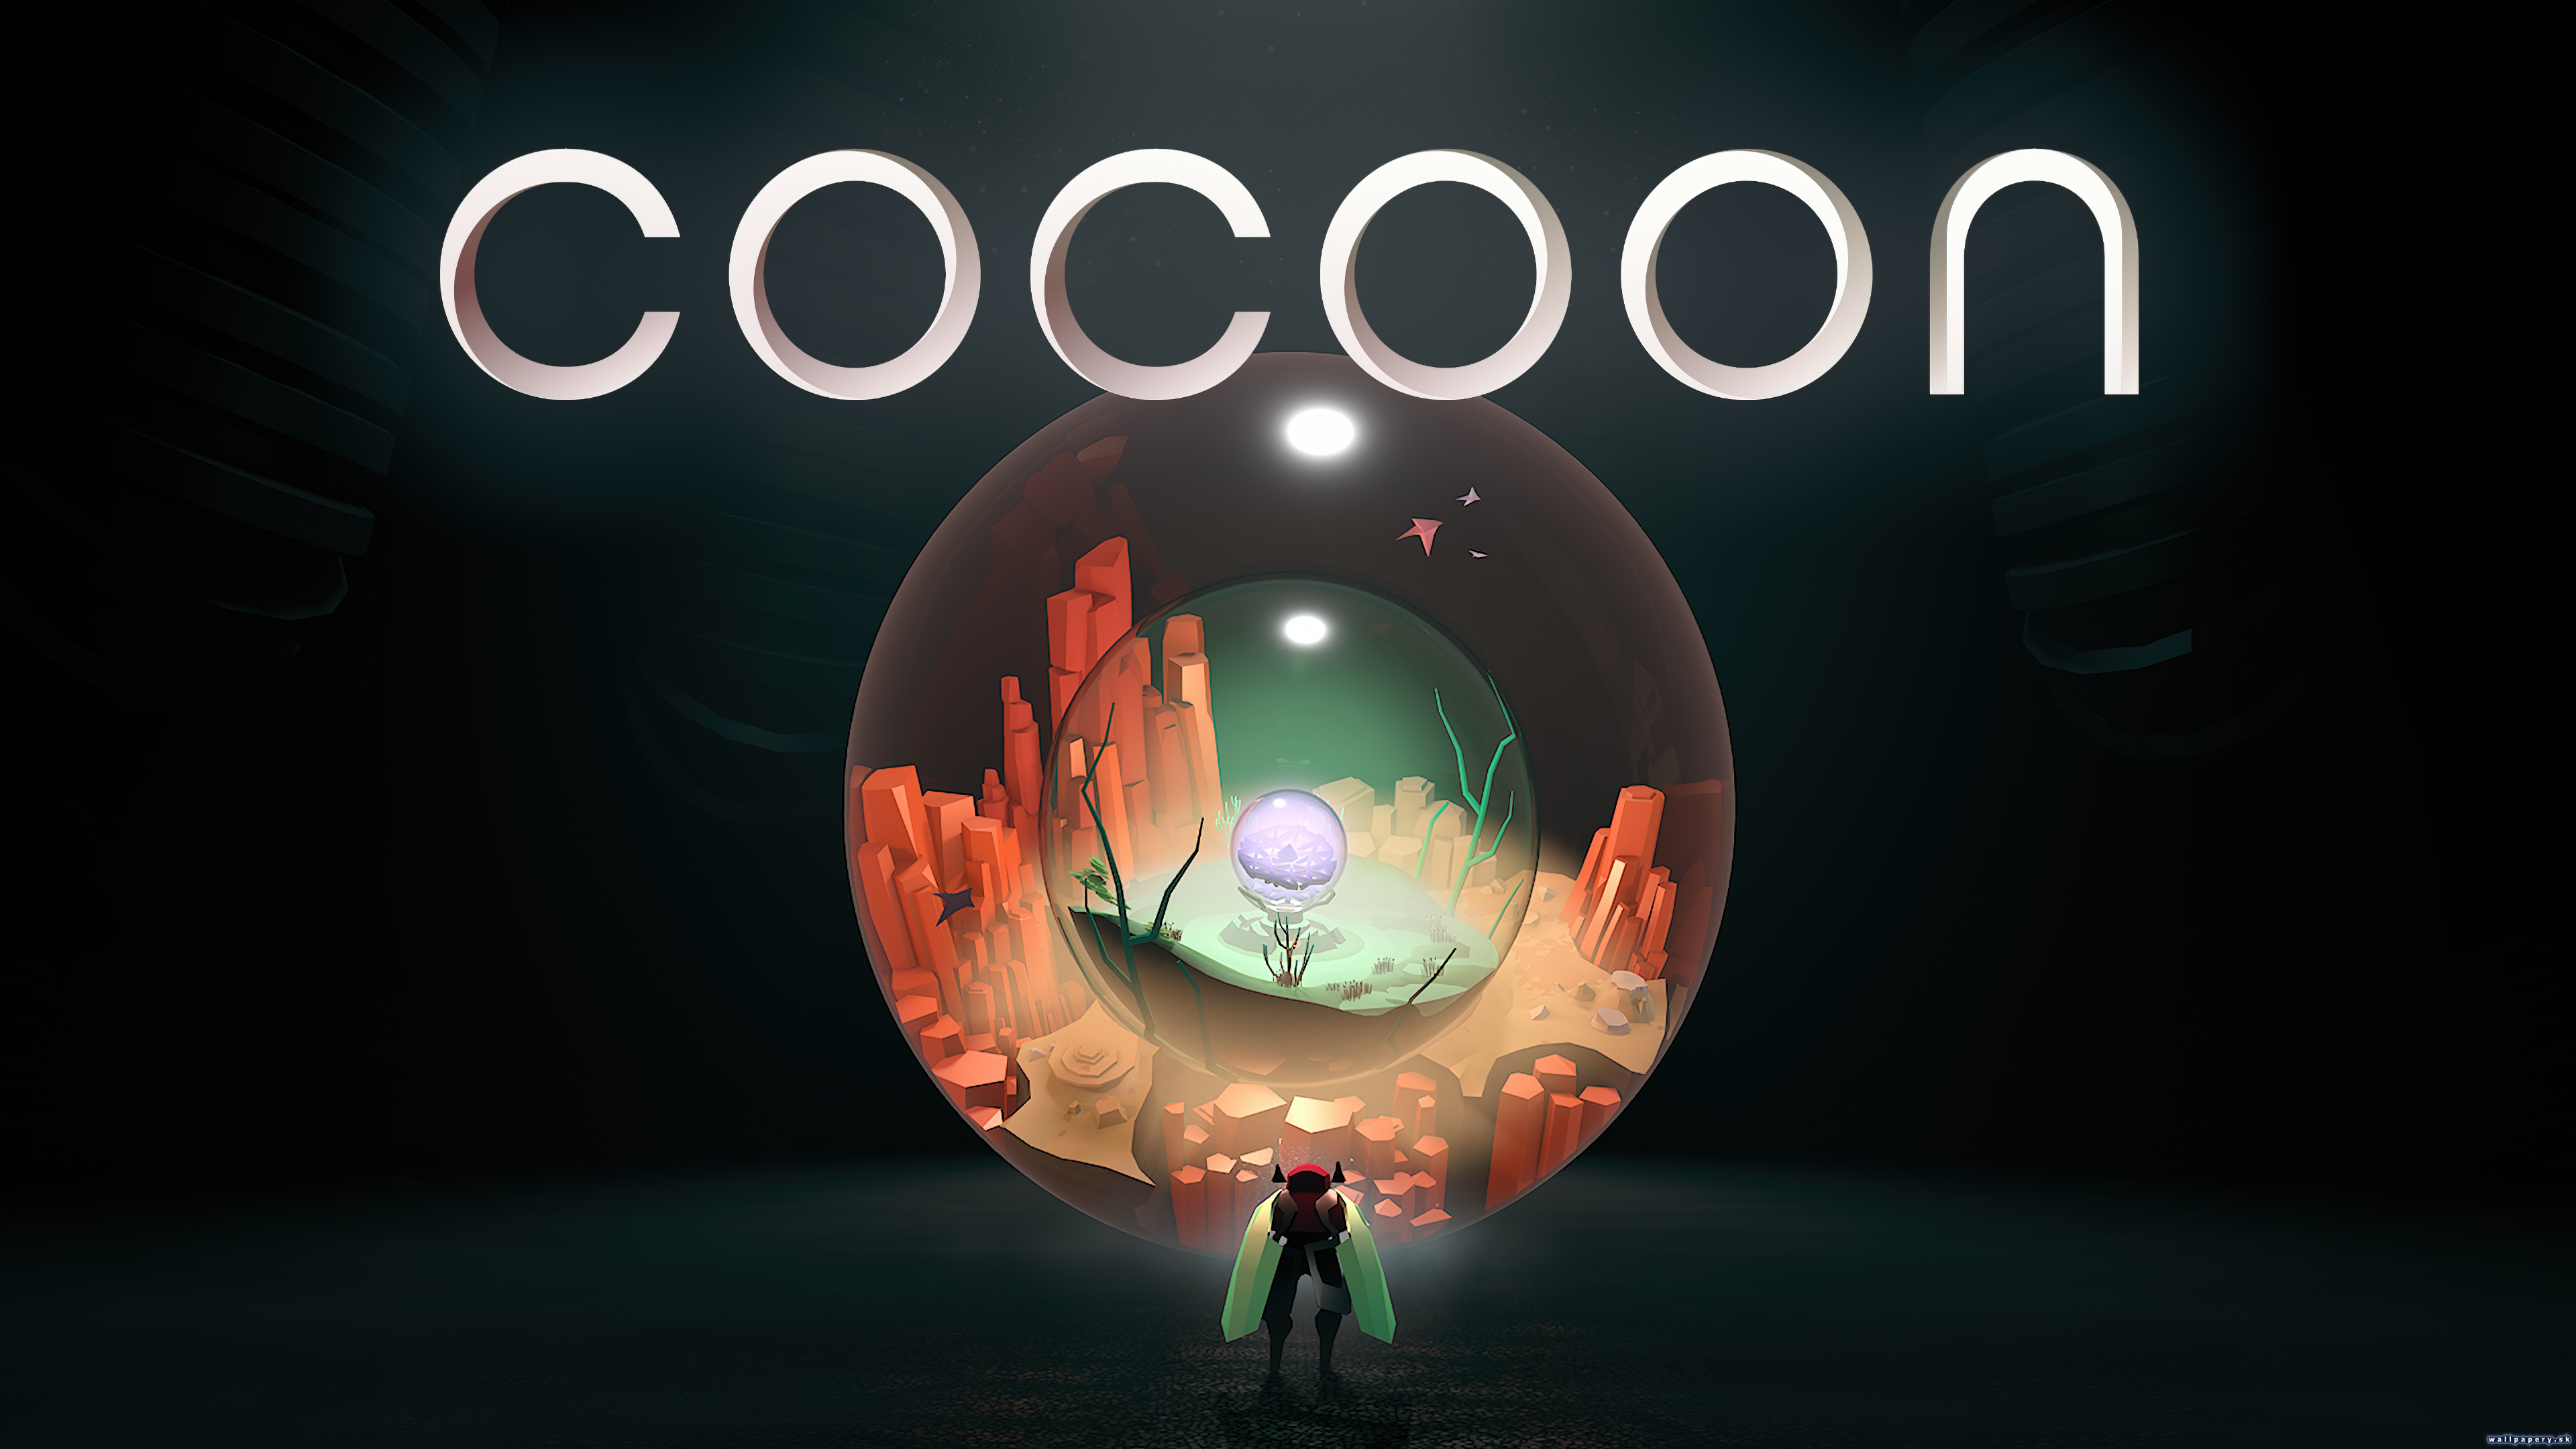 COCOON - wallpaper 1